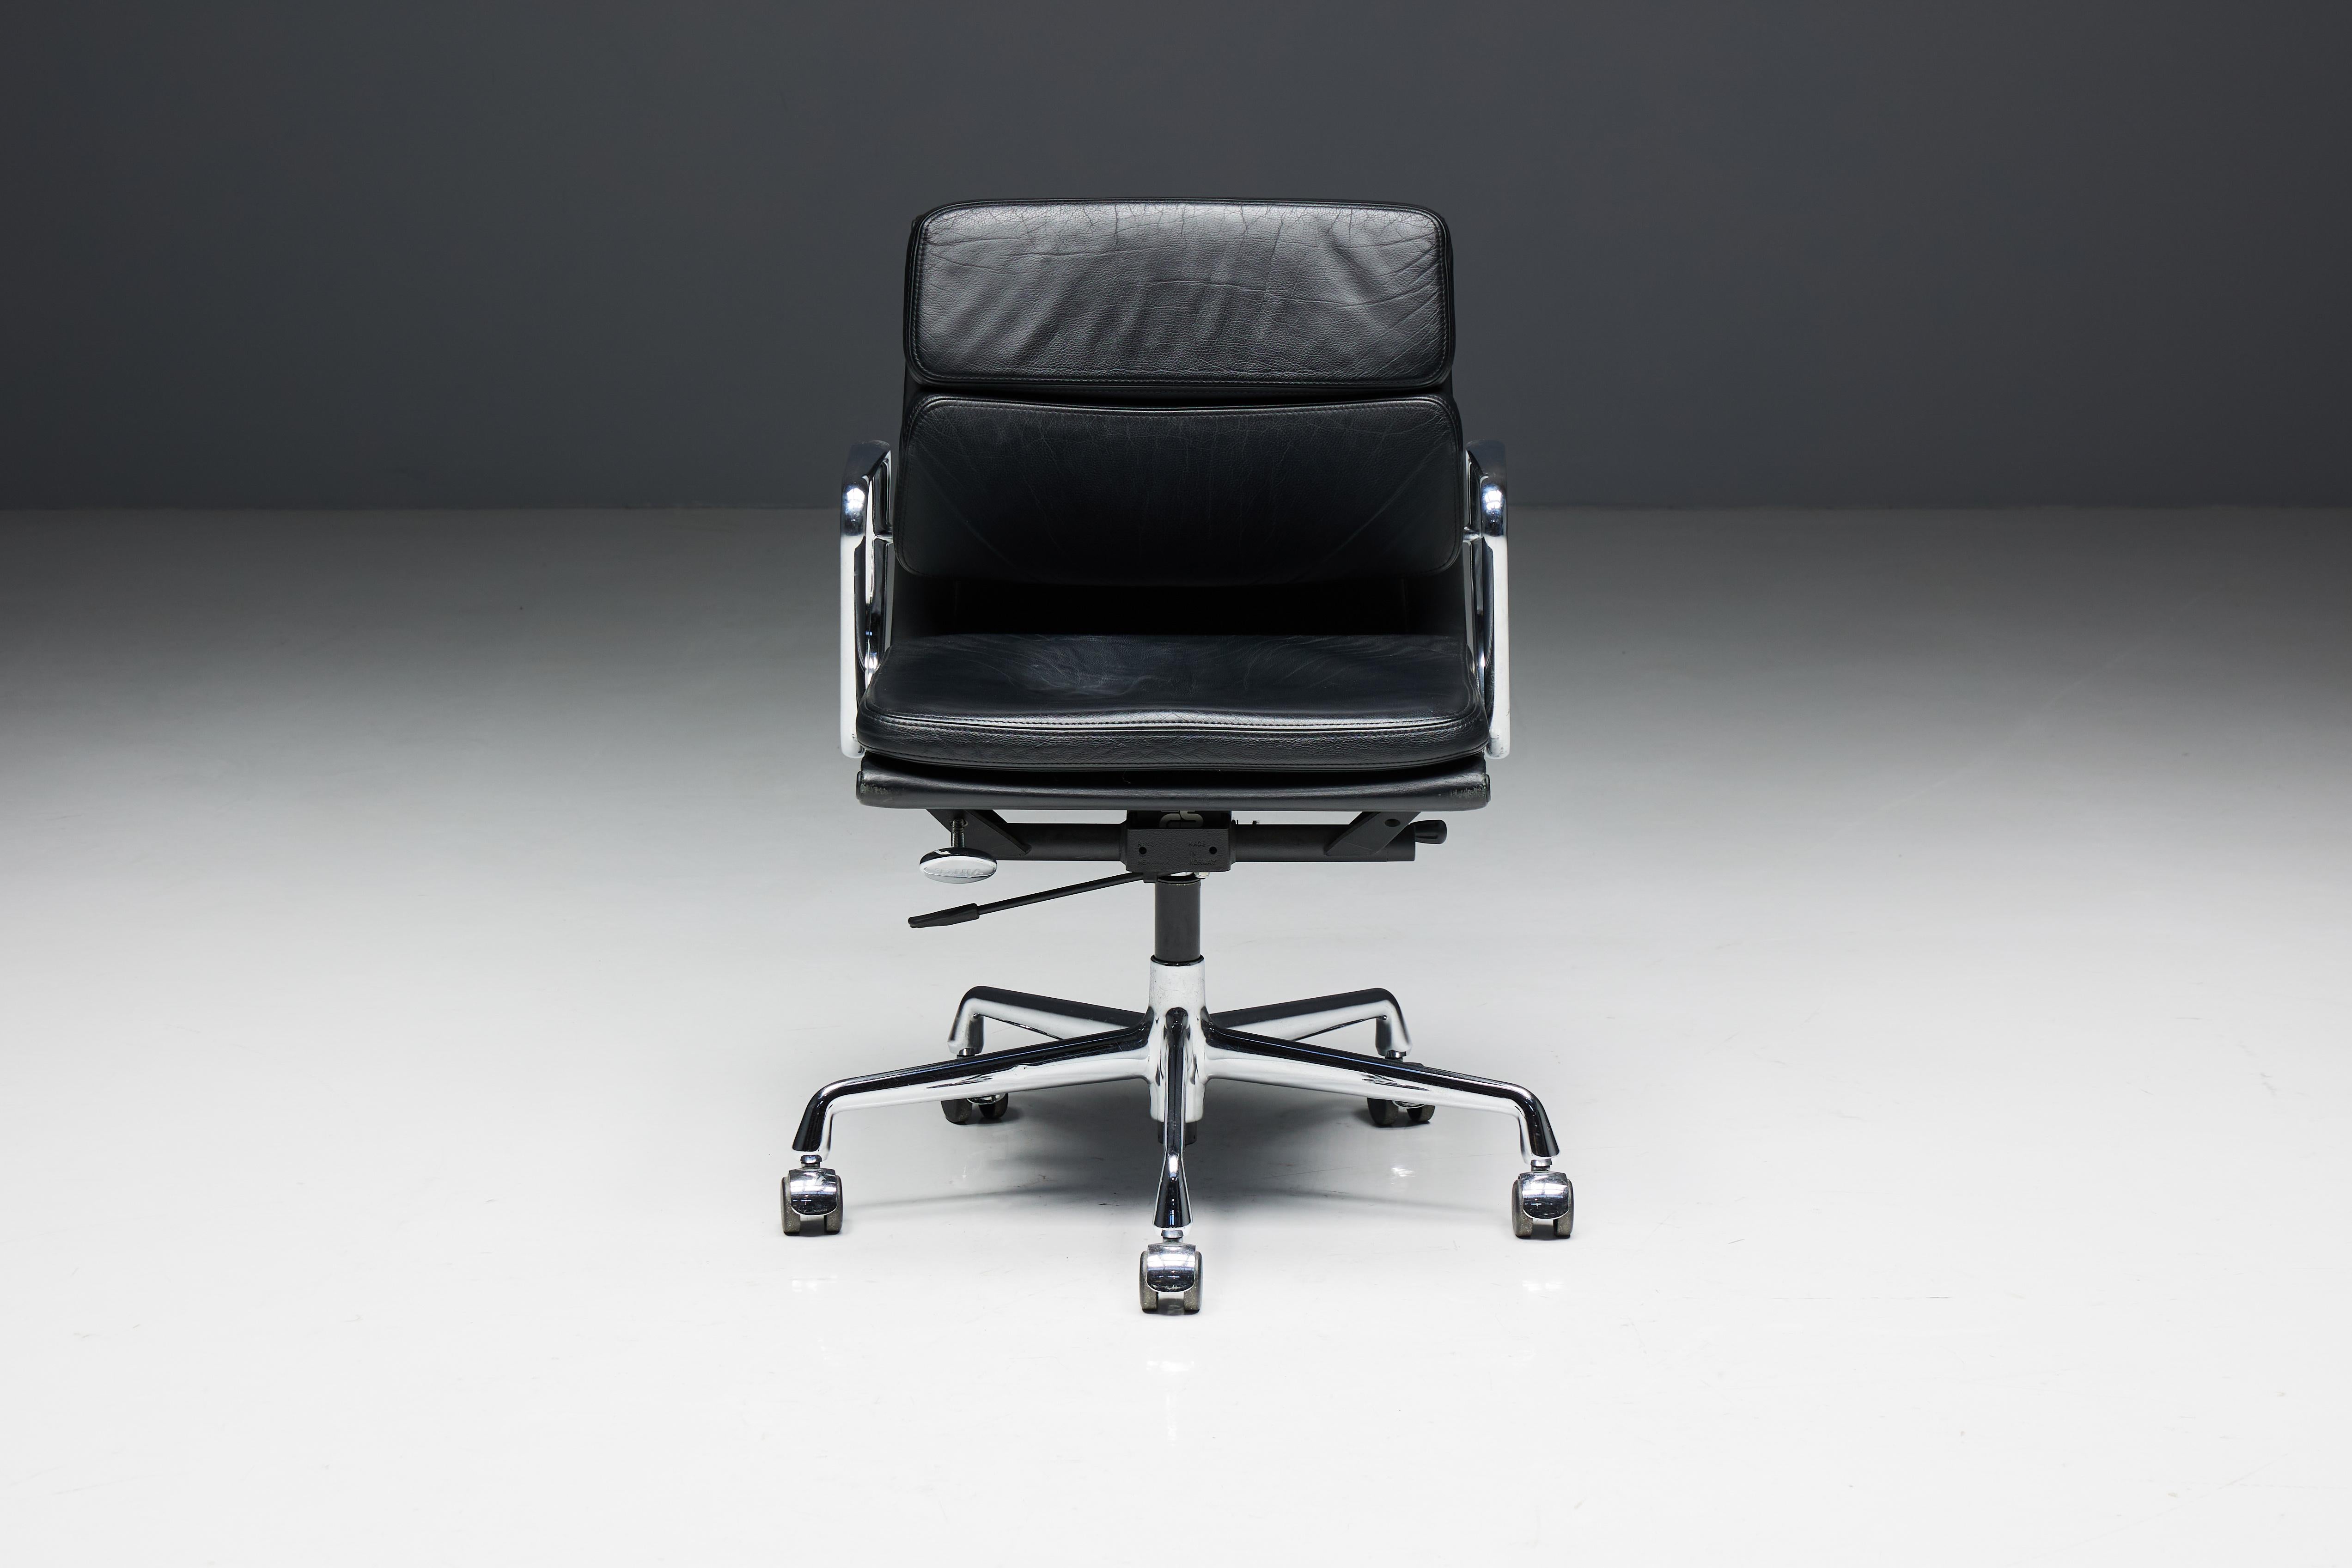 Charles und Ray Eames EA217 Softpad Bürostuhl, hergestellt von Vitra. Sitz und Rückenlehne dieses eleganten Stuhls sind aus schwarzem Leder gefertigt. Das verchromte Gestell und die Armlehnen verleihen ihm eine zeitlose Ästhetik. Er ist schwenkbar,